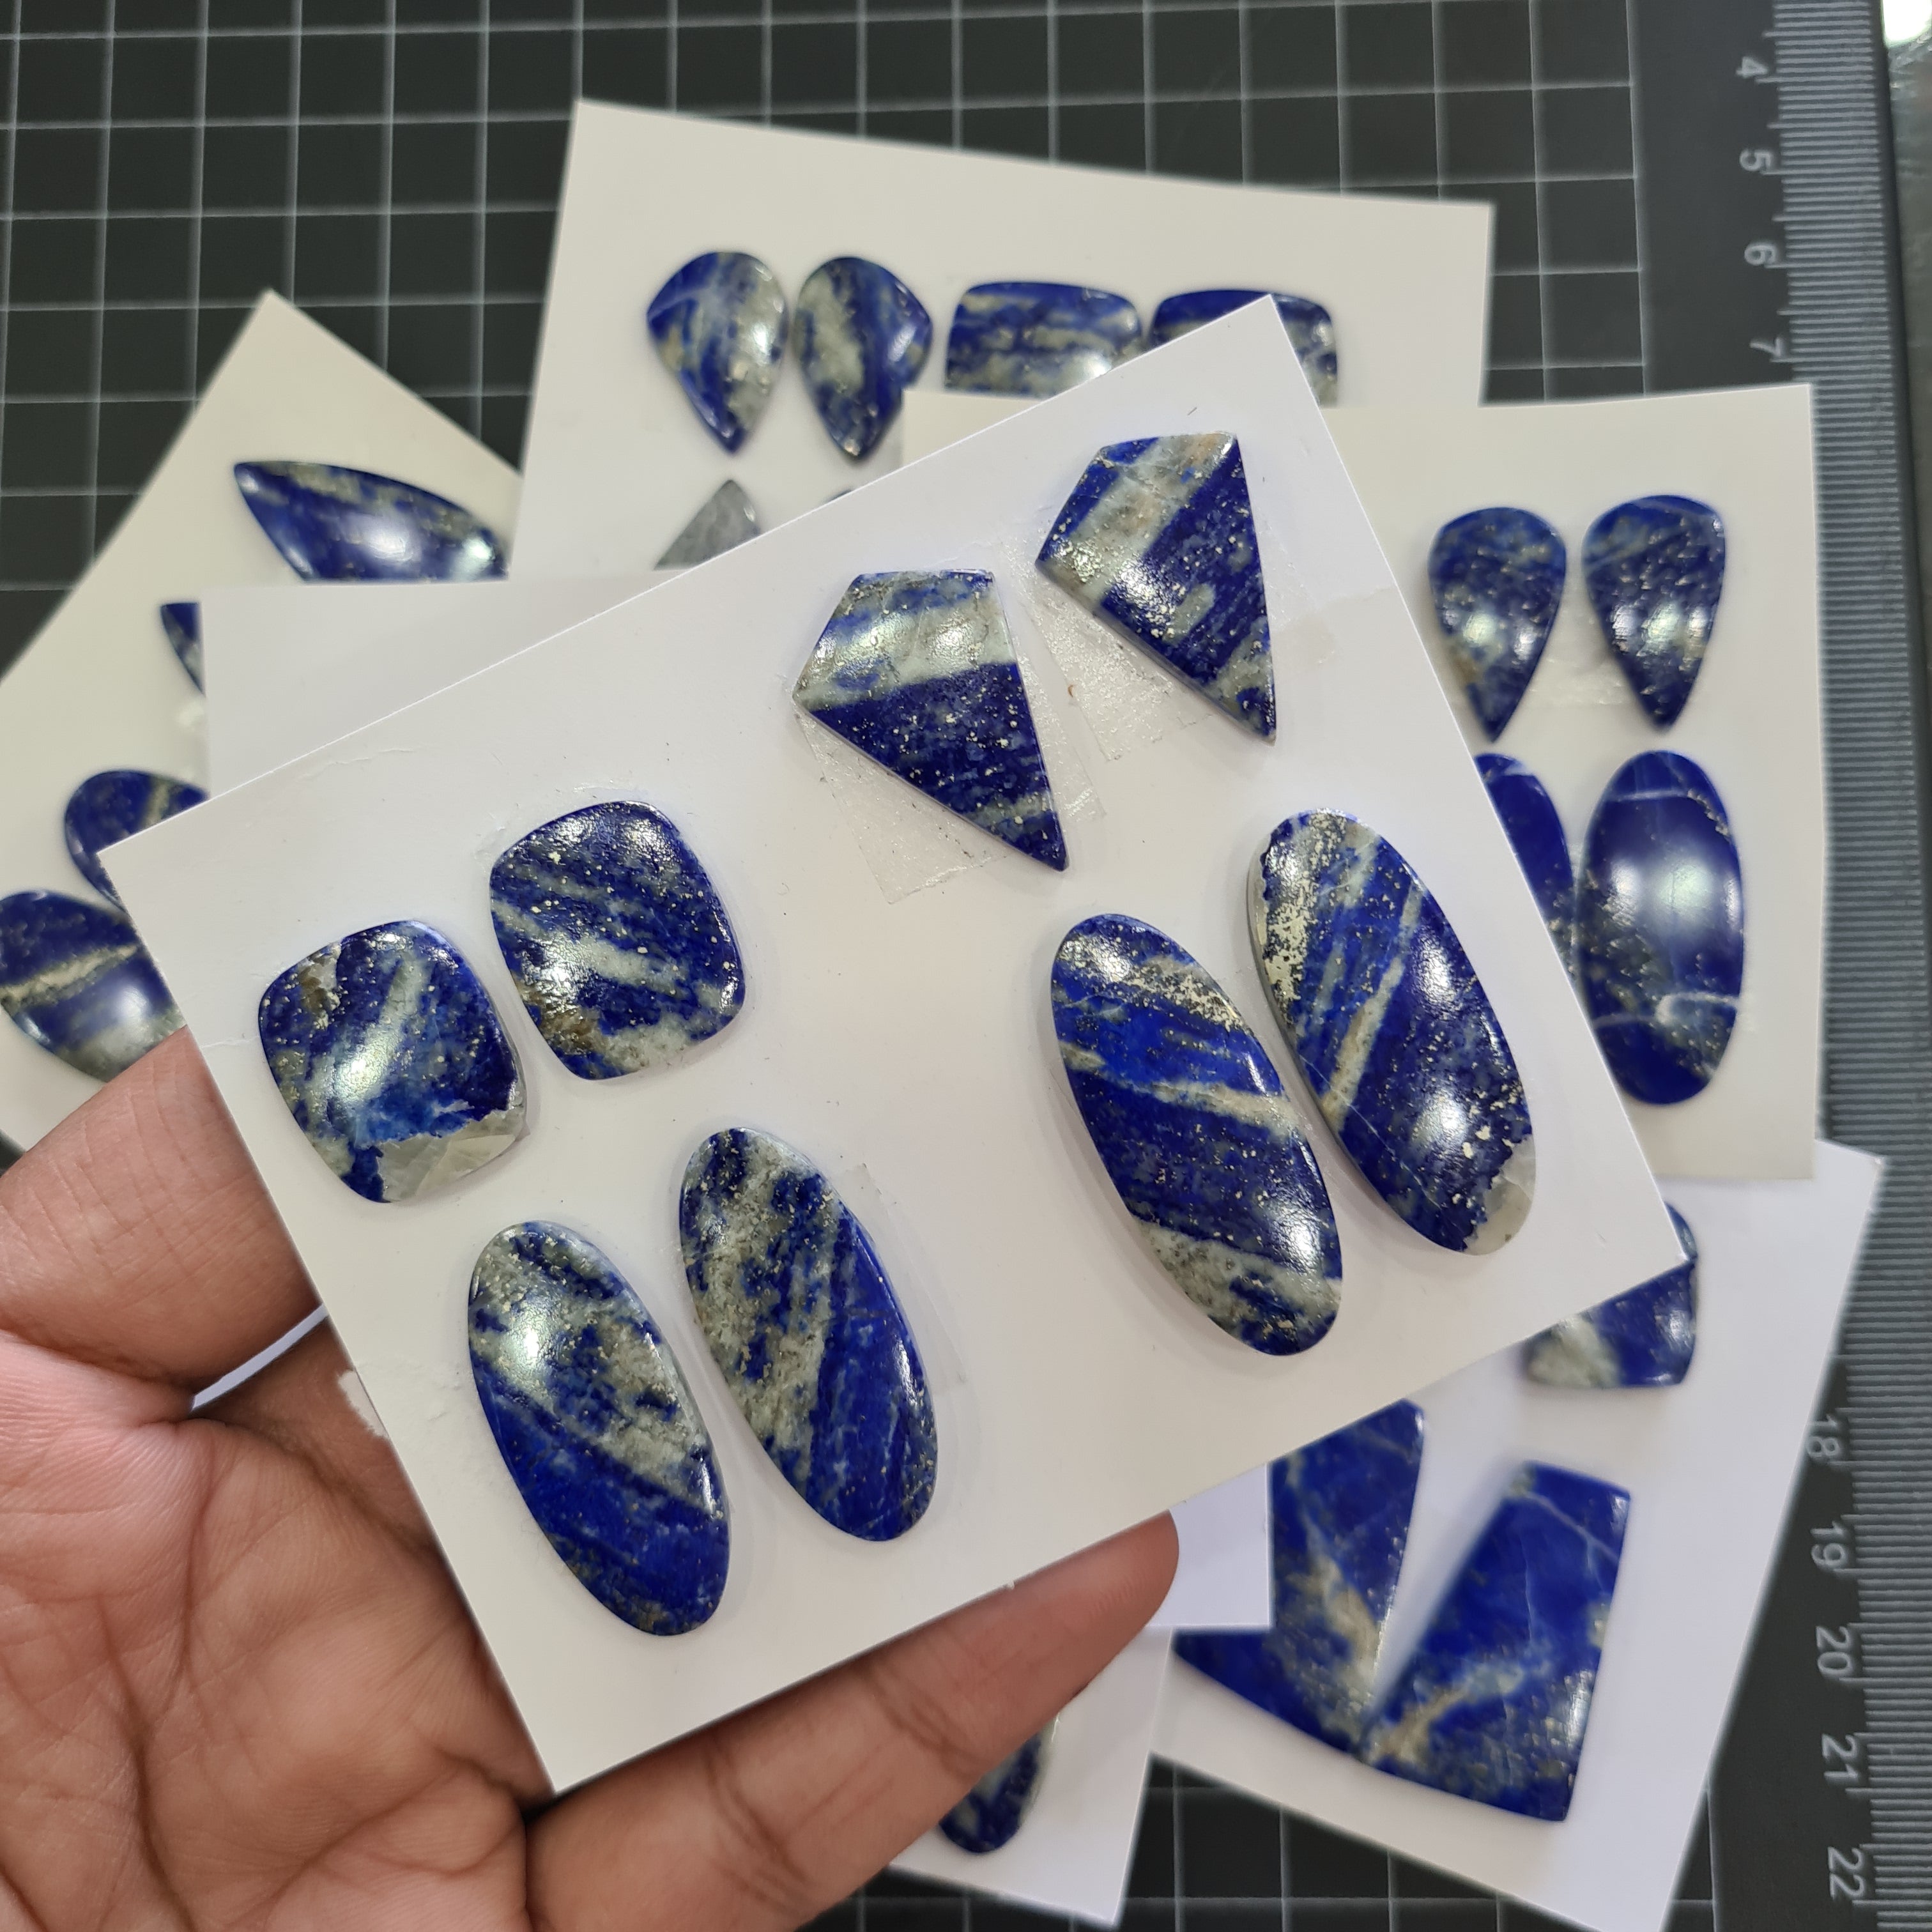 1 Set Natural Lapis Lazuli Cabs Pairs Mix Shape Size: 19-32mm - The LabradoriteKing